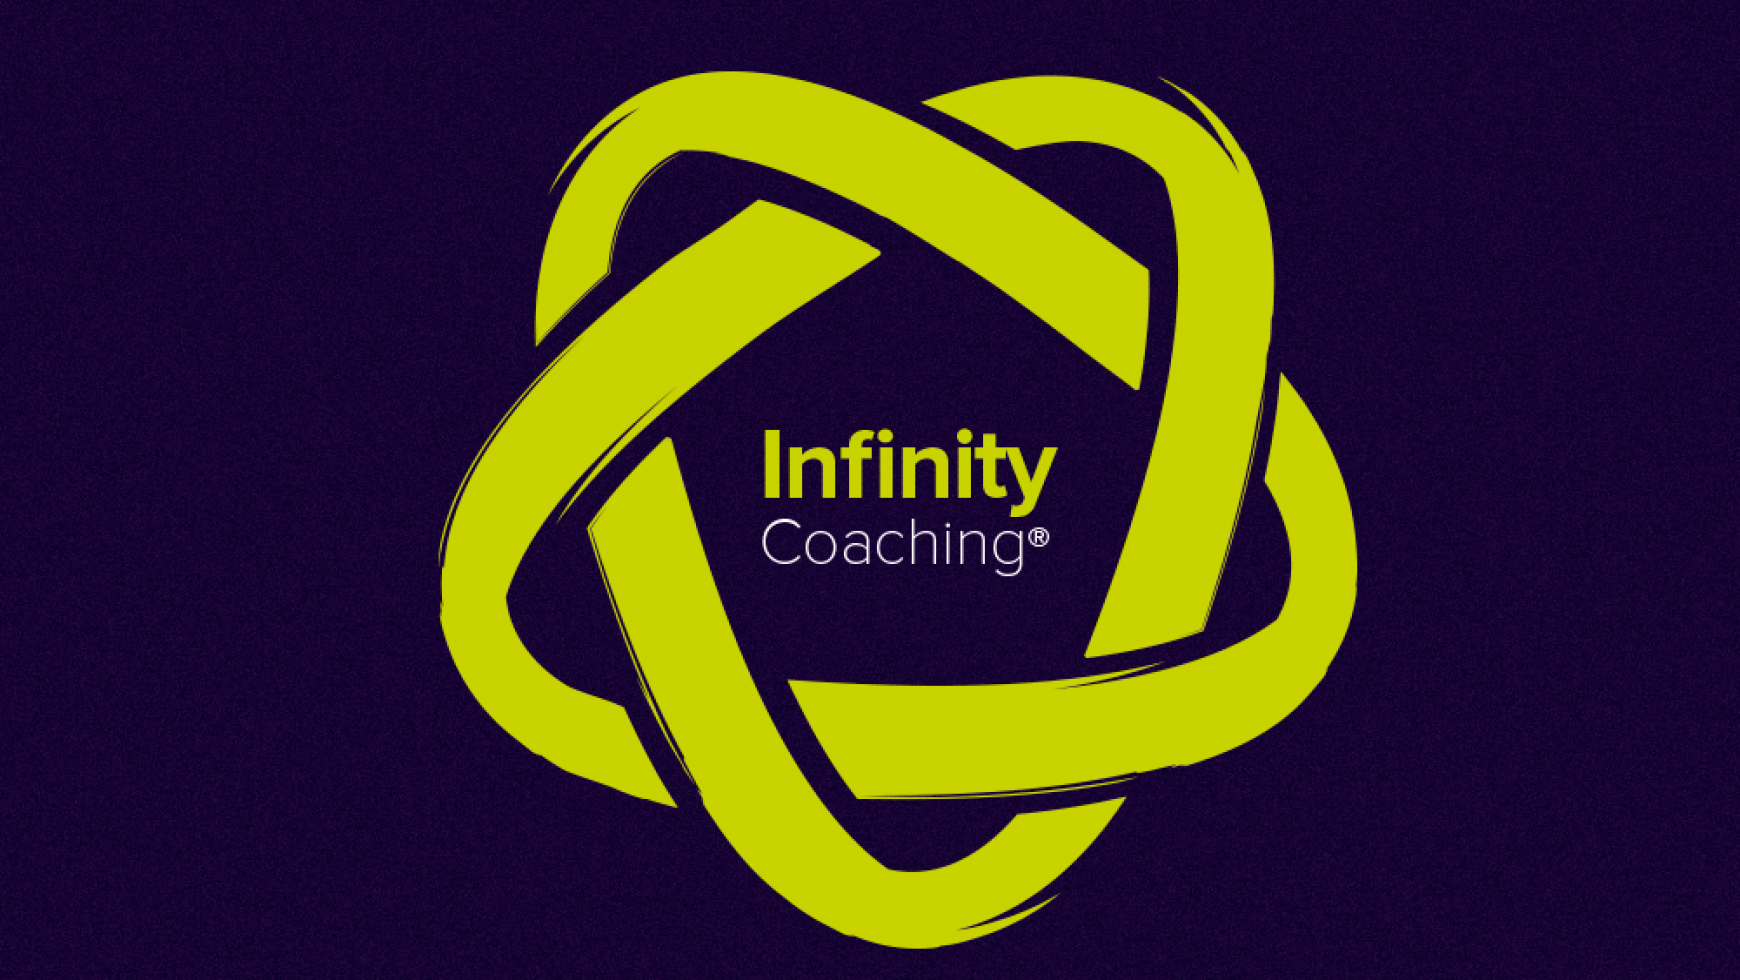 L’Infinity Coaching